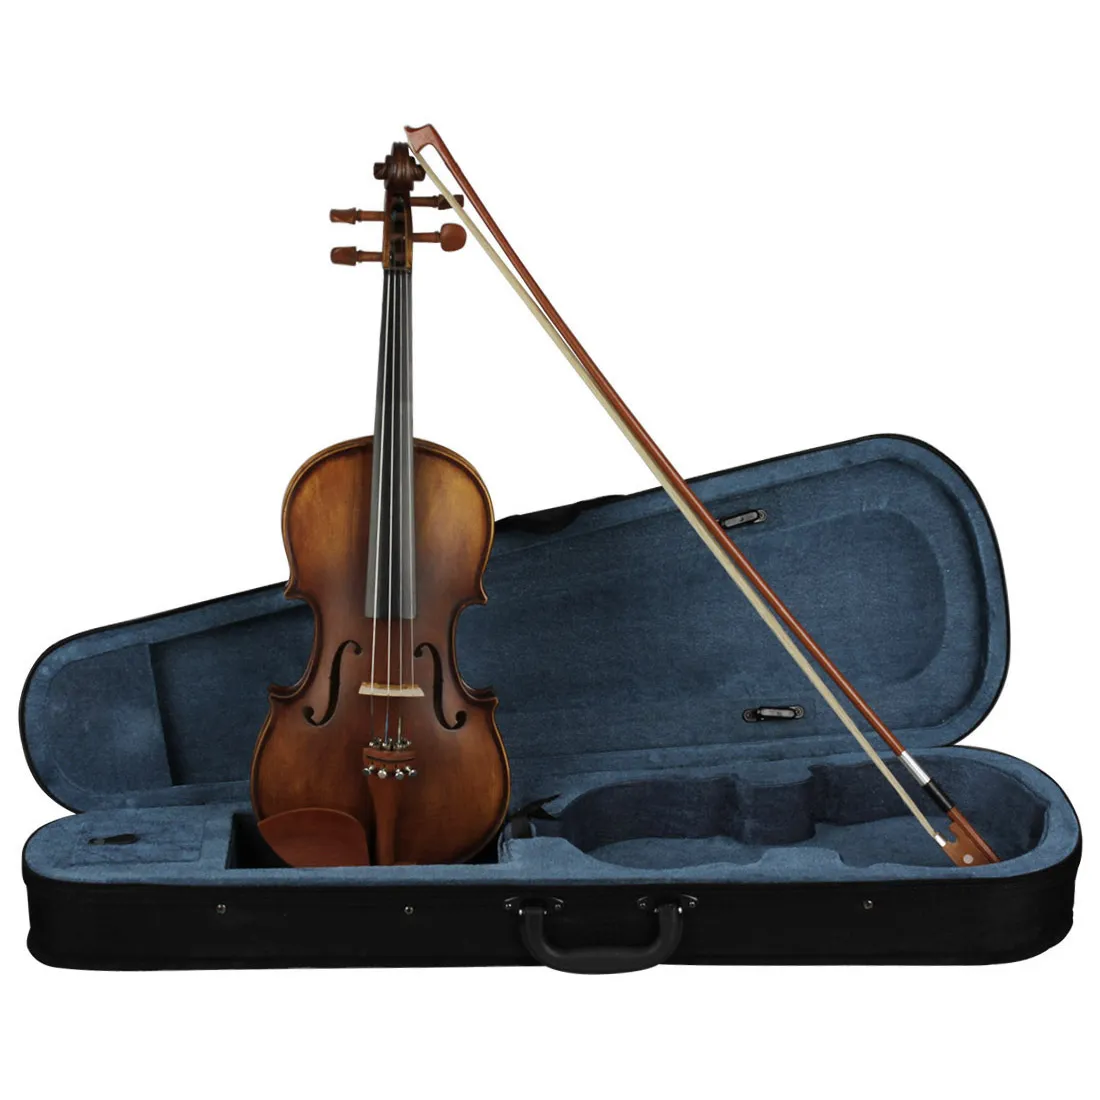 ハイエンドバイオリンピュアハンドメイドアンティークバイオリン4/4フルレンジのジュジュベウッドプロフェッショナルバイオリン4/4演奏楽器